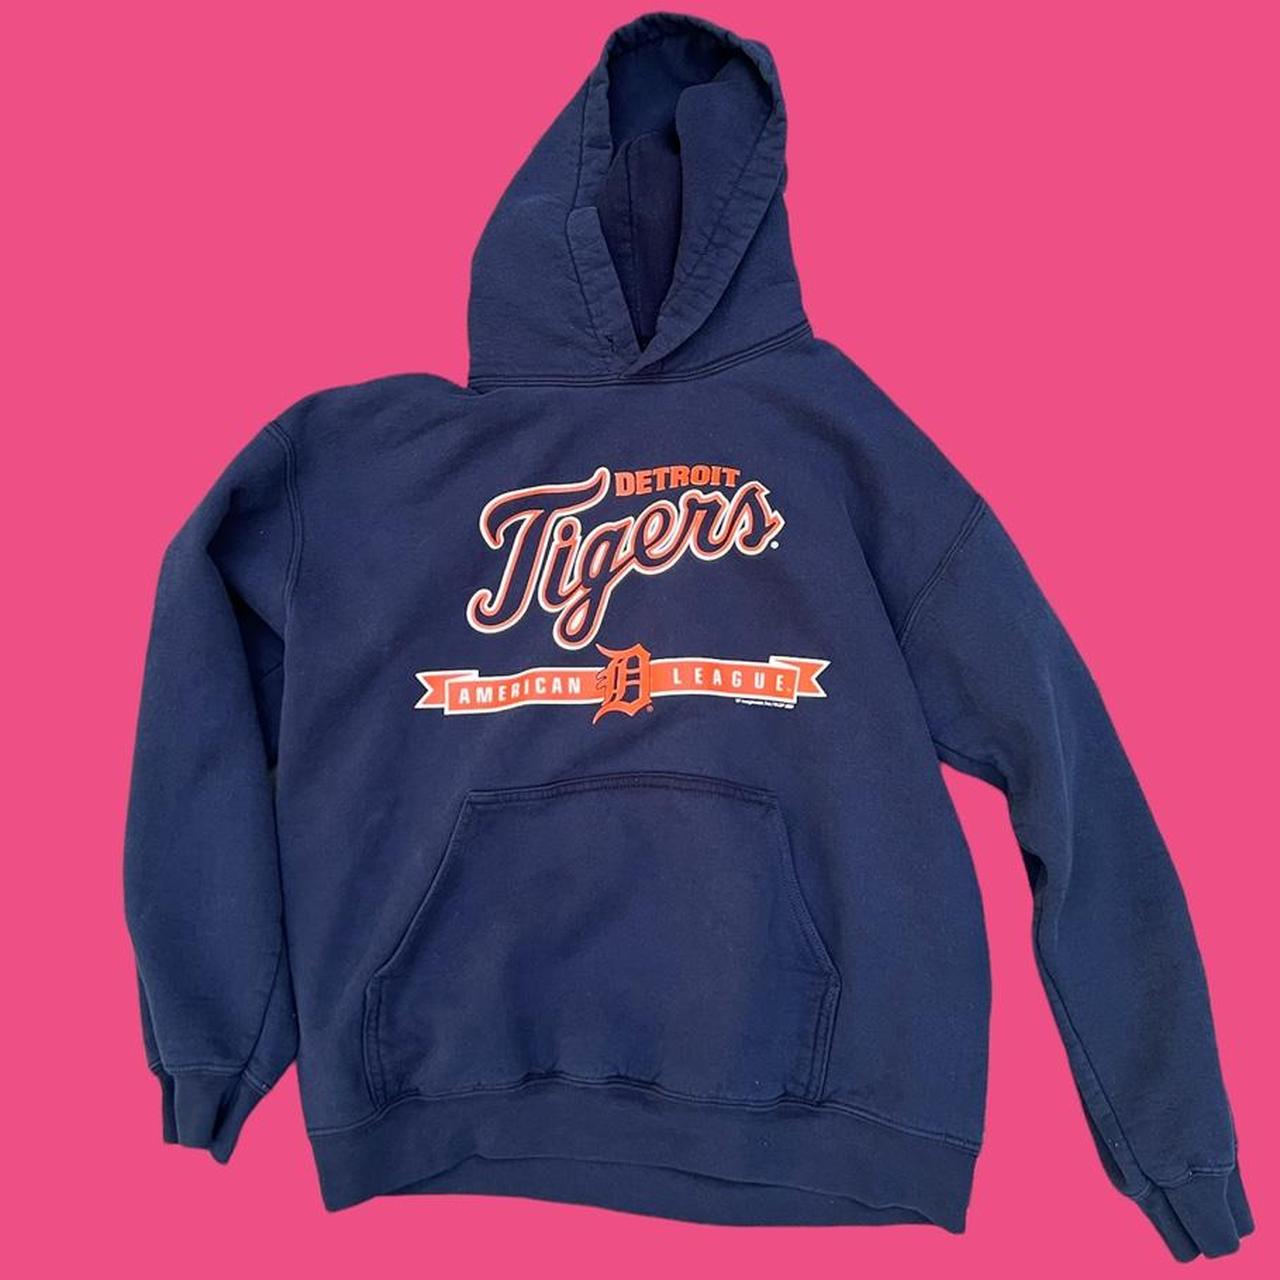 Vintage Detroit Tigers hoodie, this one seems - Depop